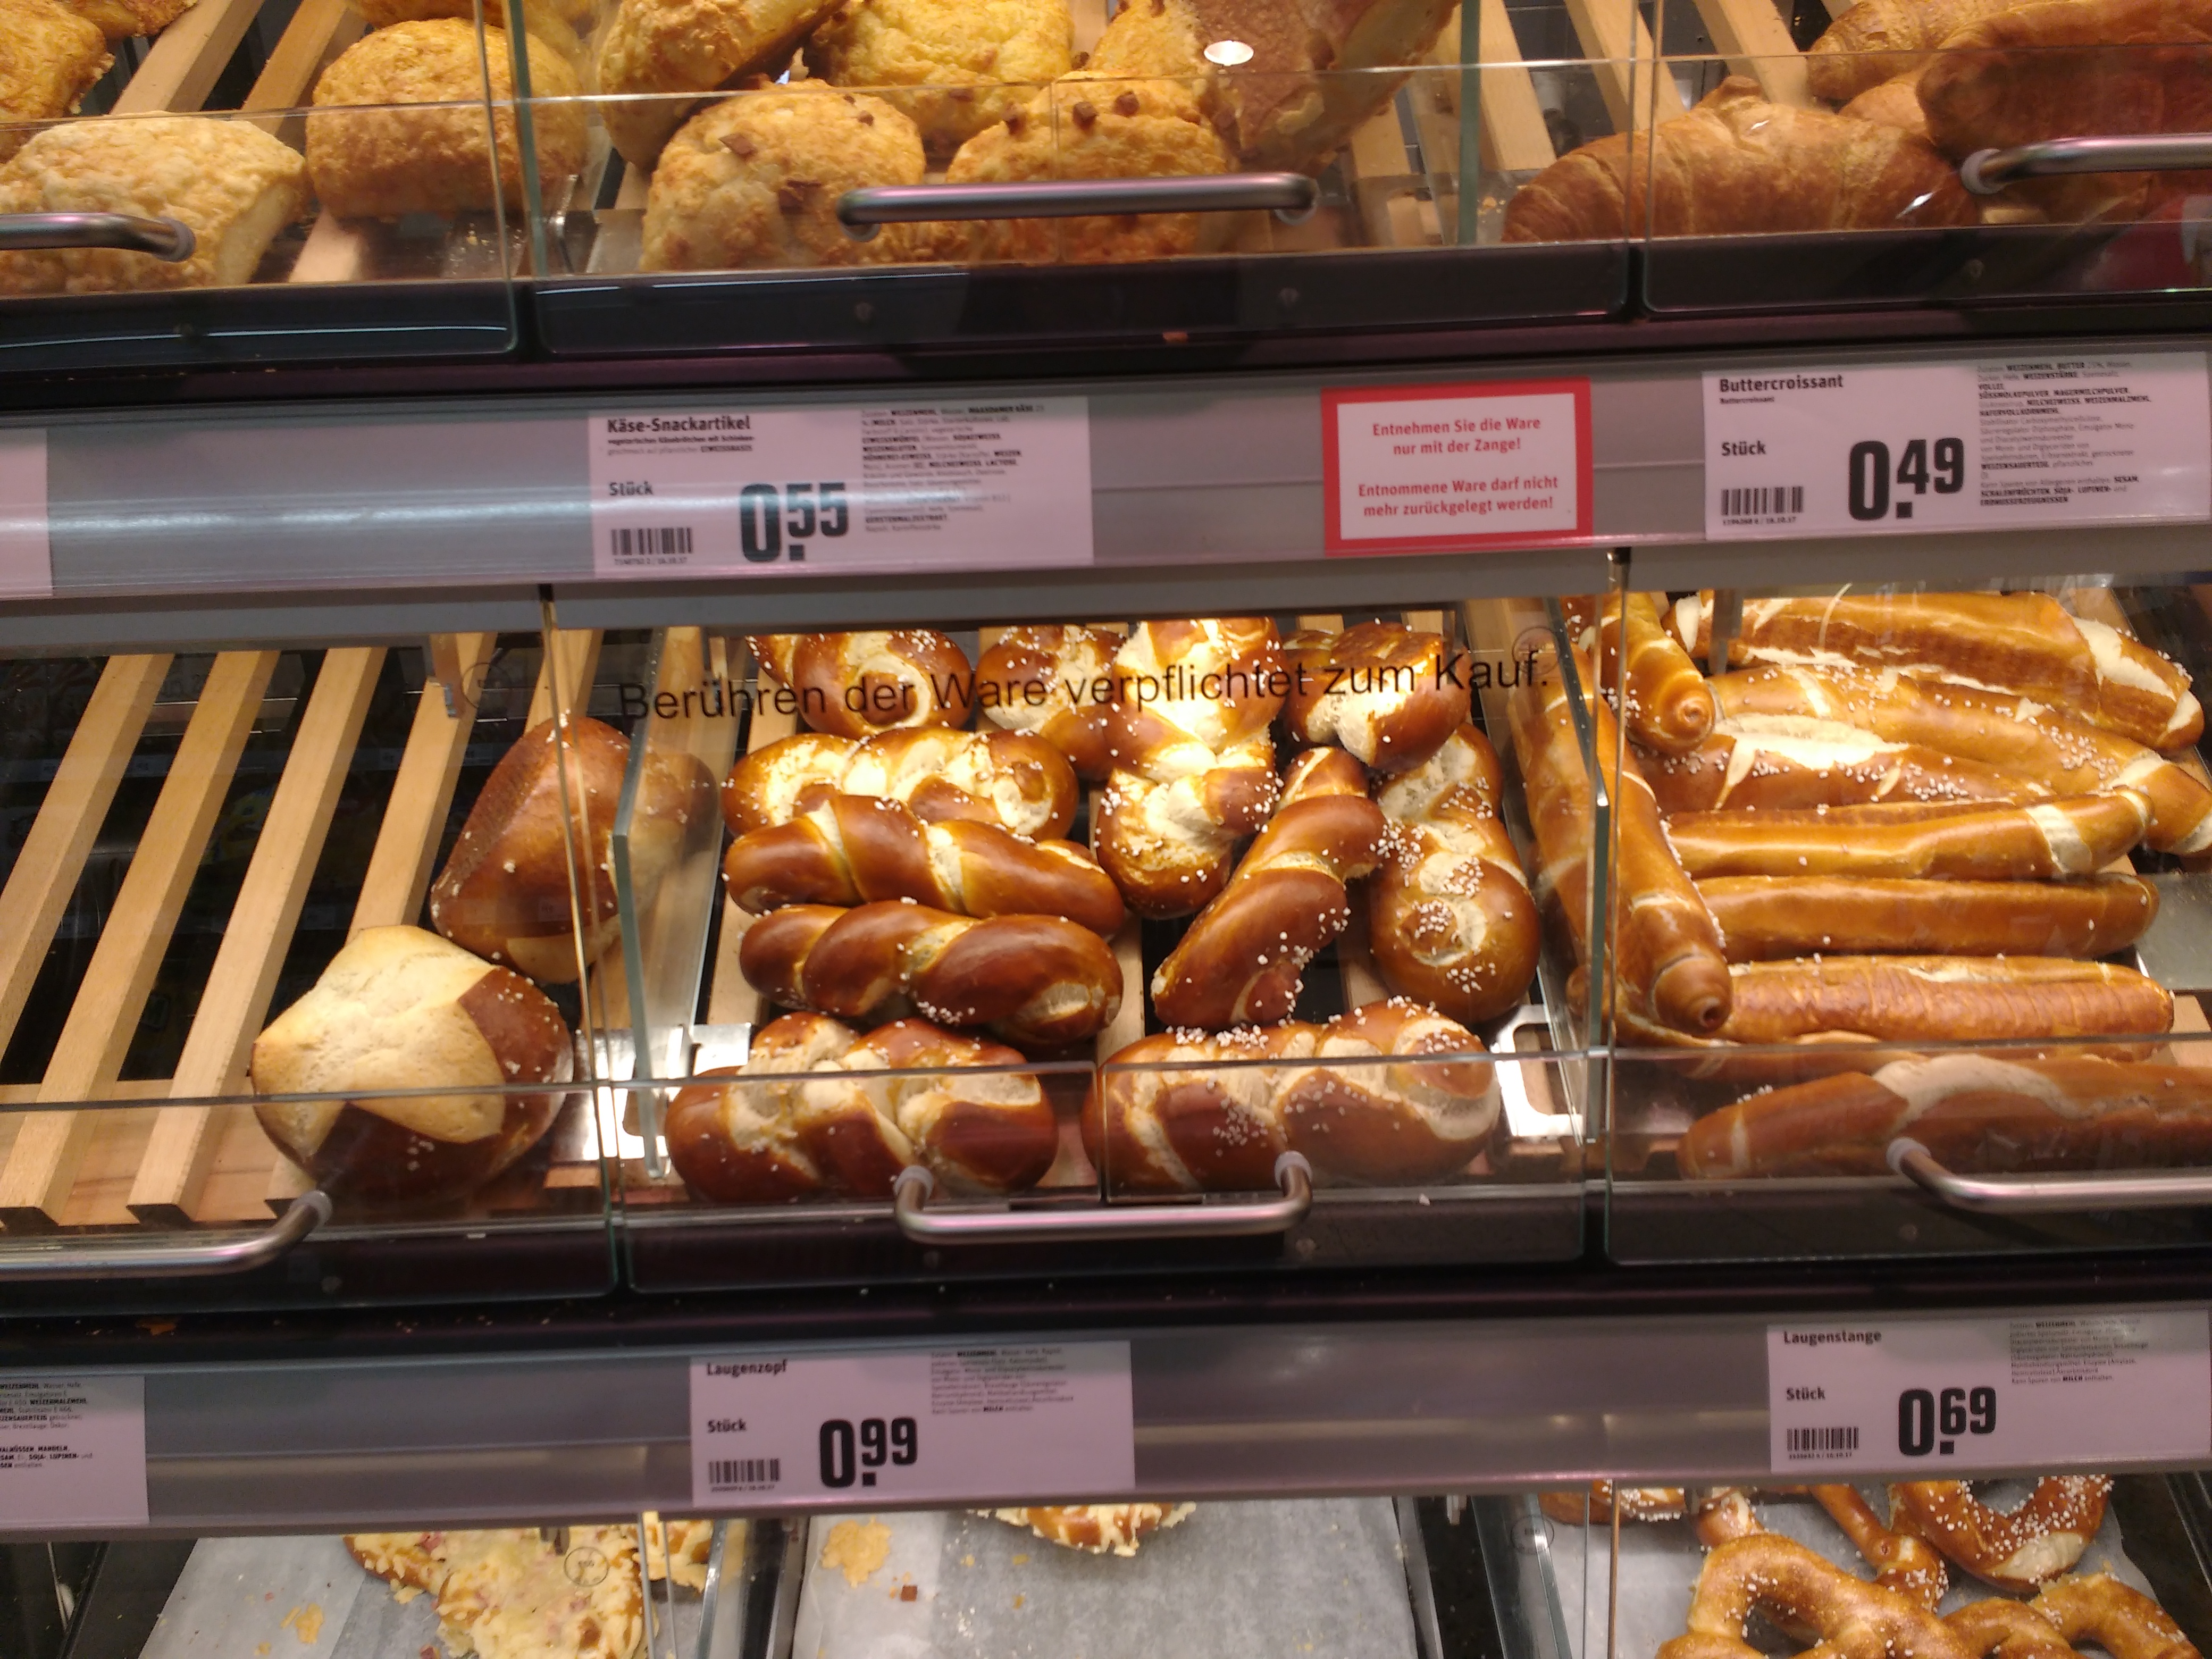 噛むほどに味が出る 1 500種類以上の中から ドイツの味わい深いパンを厳選 Trip S トリップス